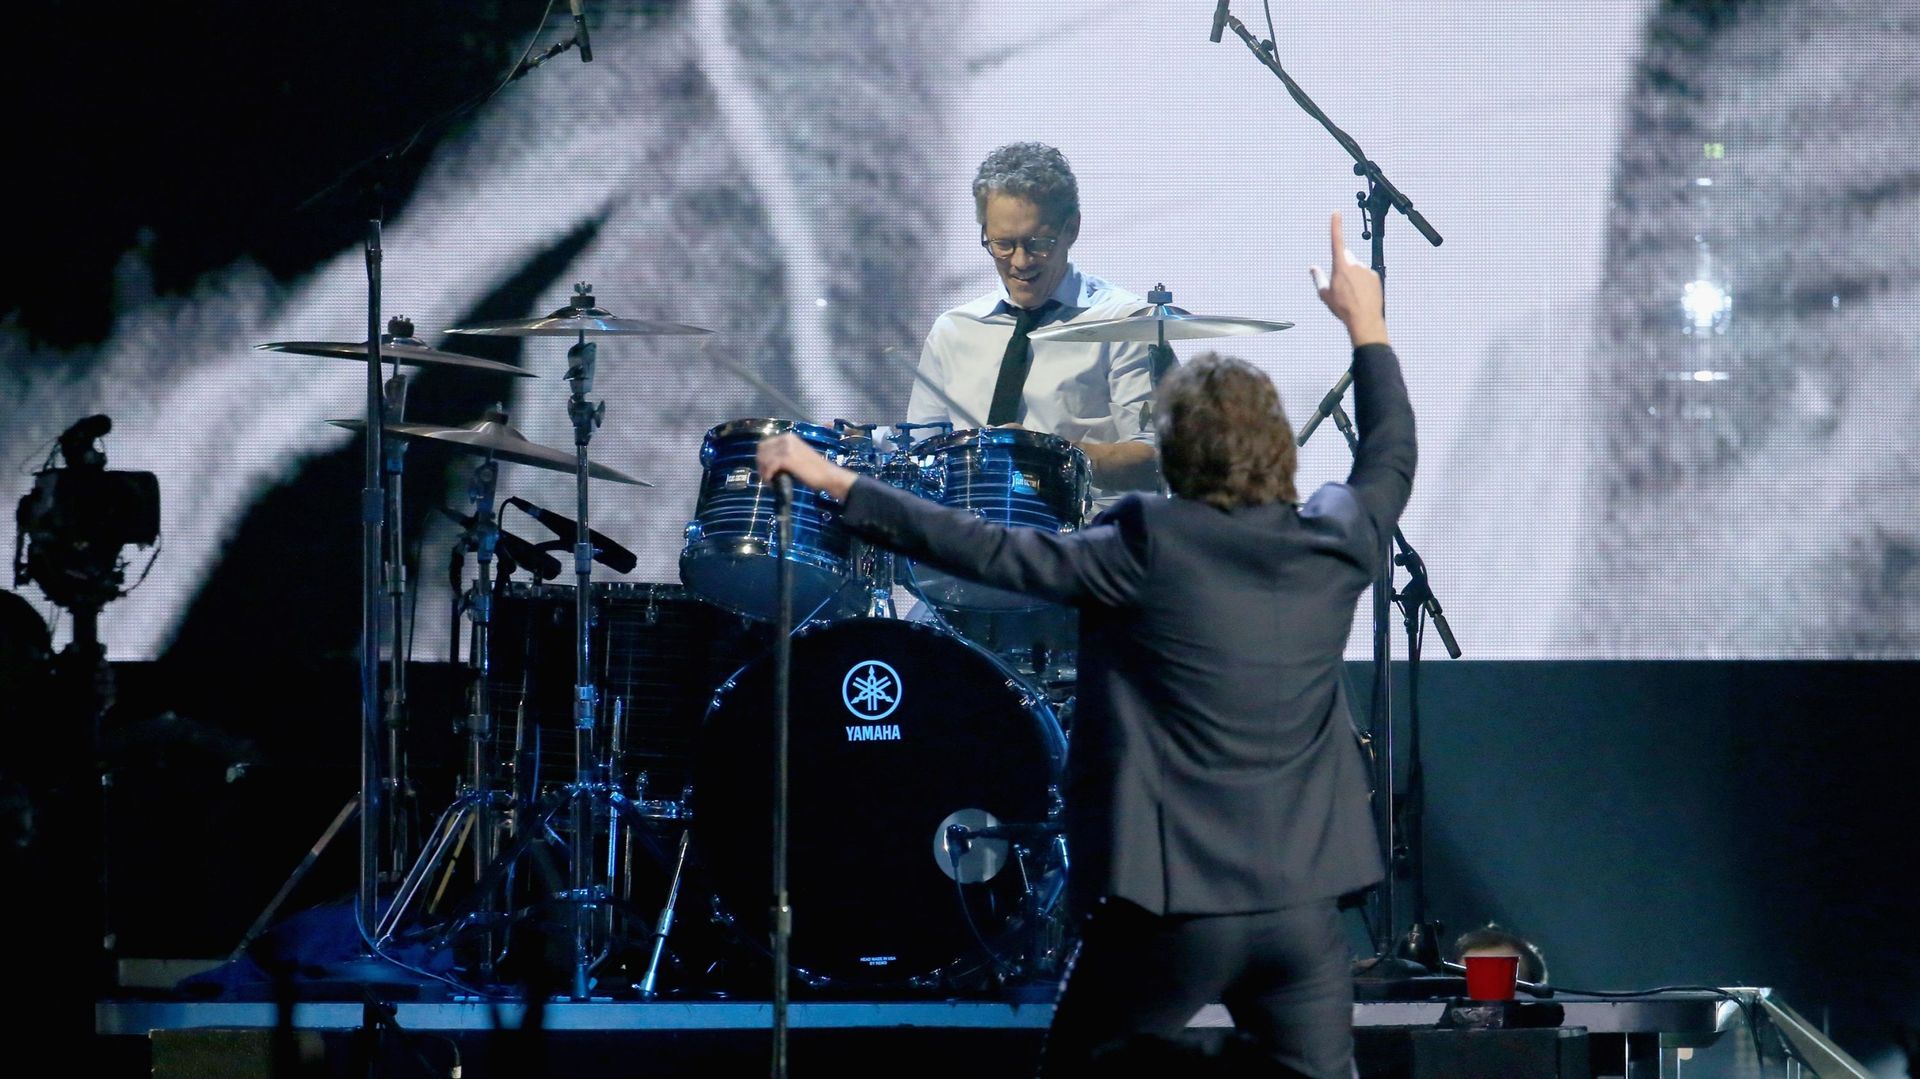 Le batteur de "Ten" rejoue l’album avec Pearl Jam sur Scène